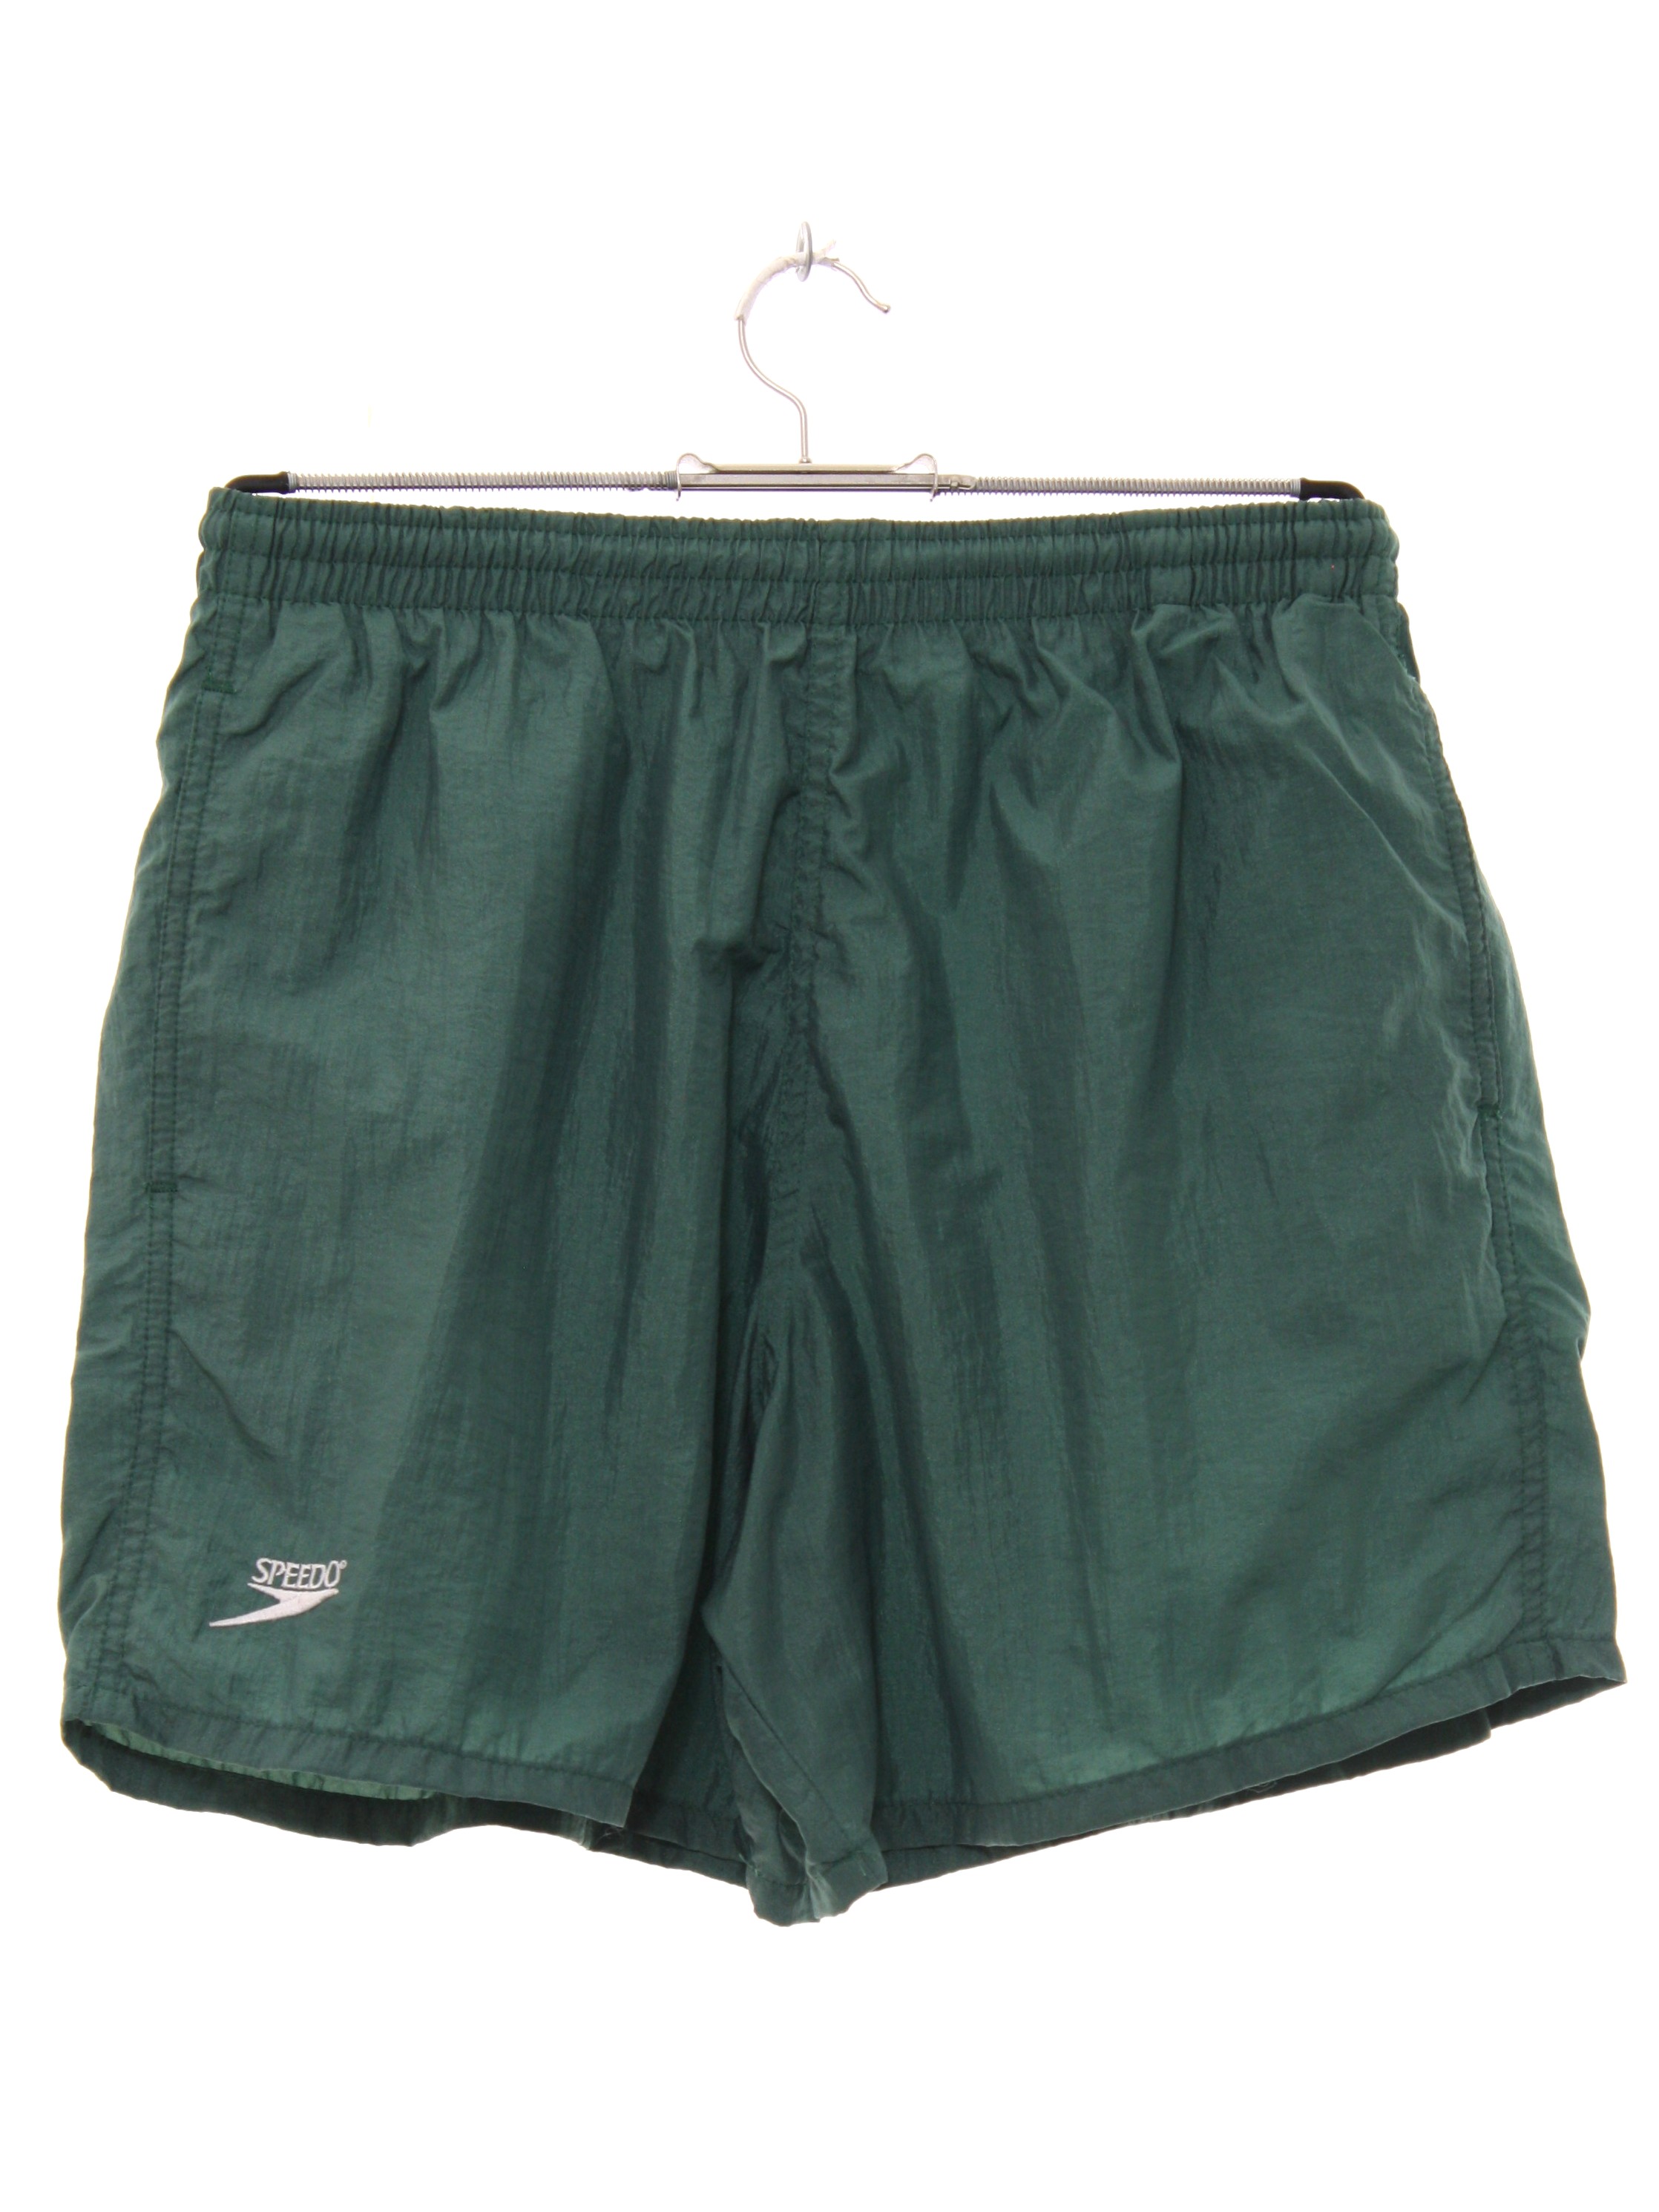 Retro 1980's Shorts (Speedo) : Late 80s -Speedo- Mens shiny pine green ...